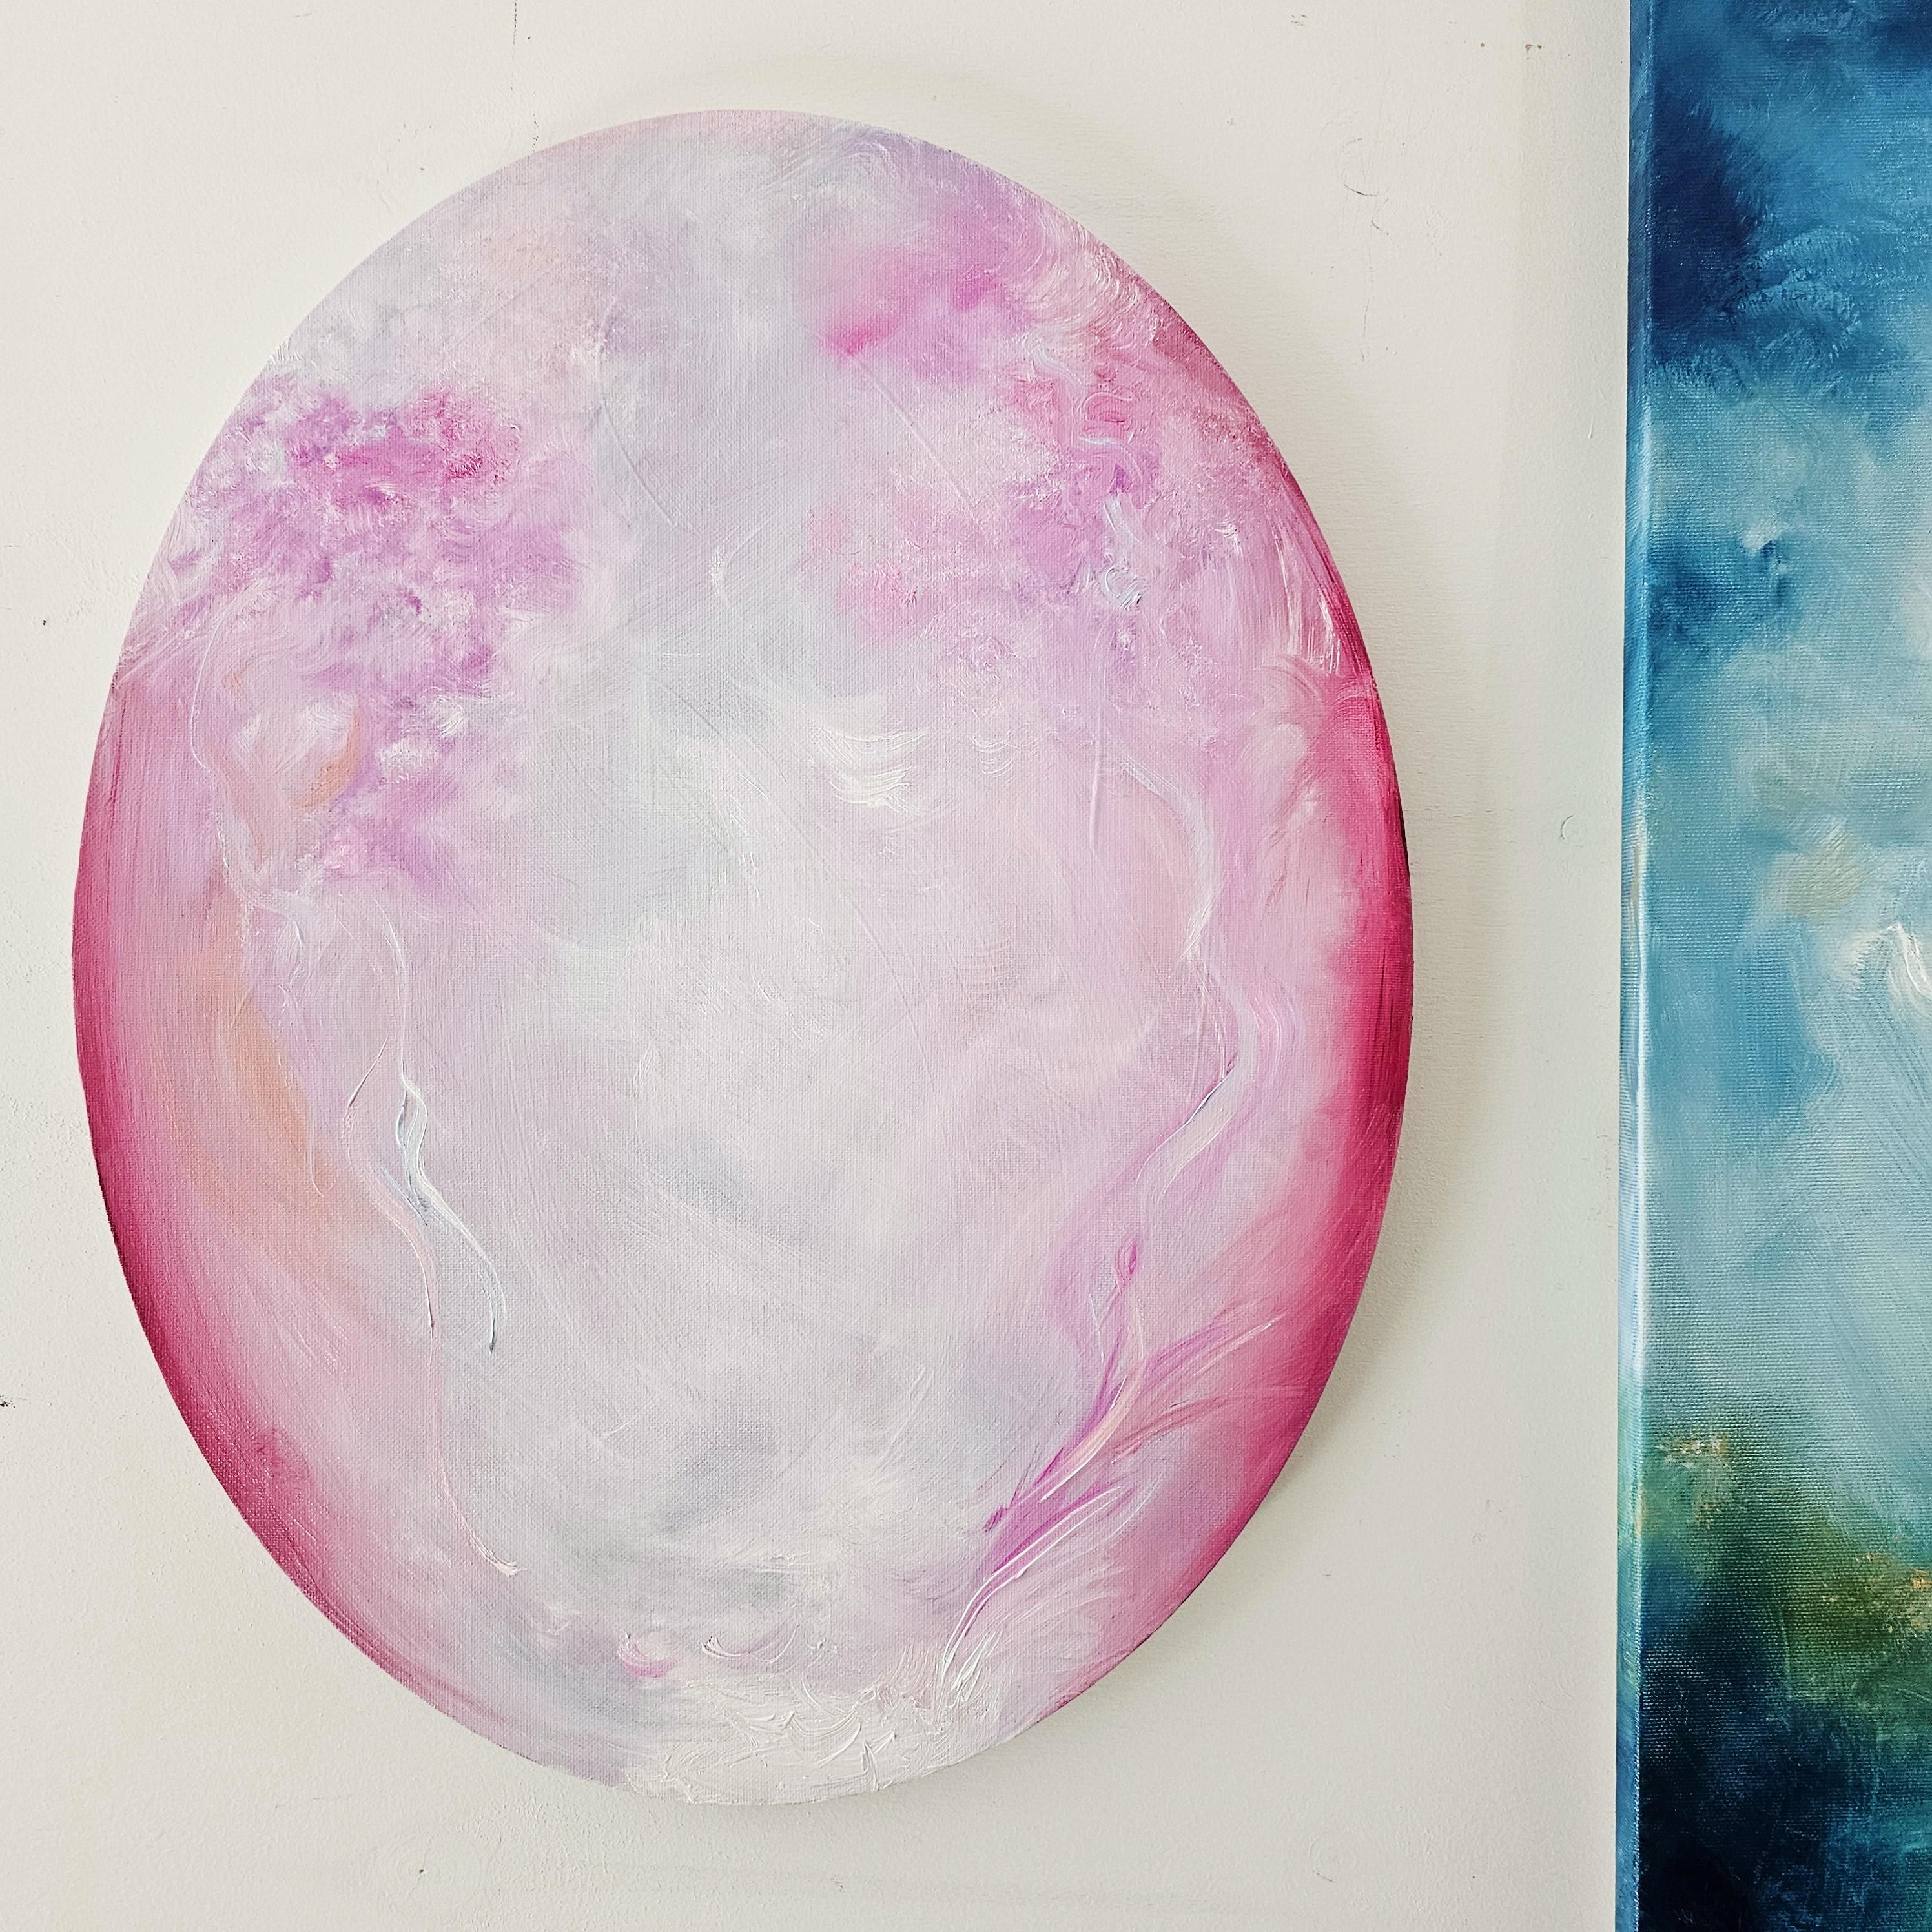 I fell in love - Rosa ovales abstraktes Gemälde (Abstrakt), Painting, von Jennifer L. Baker